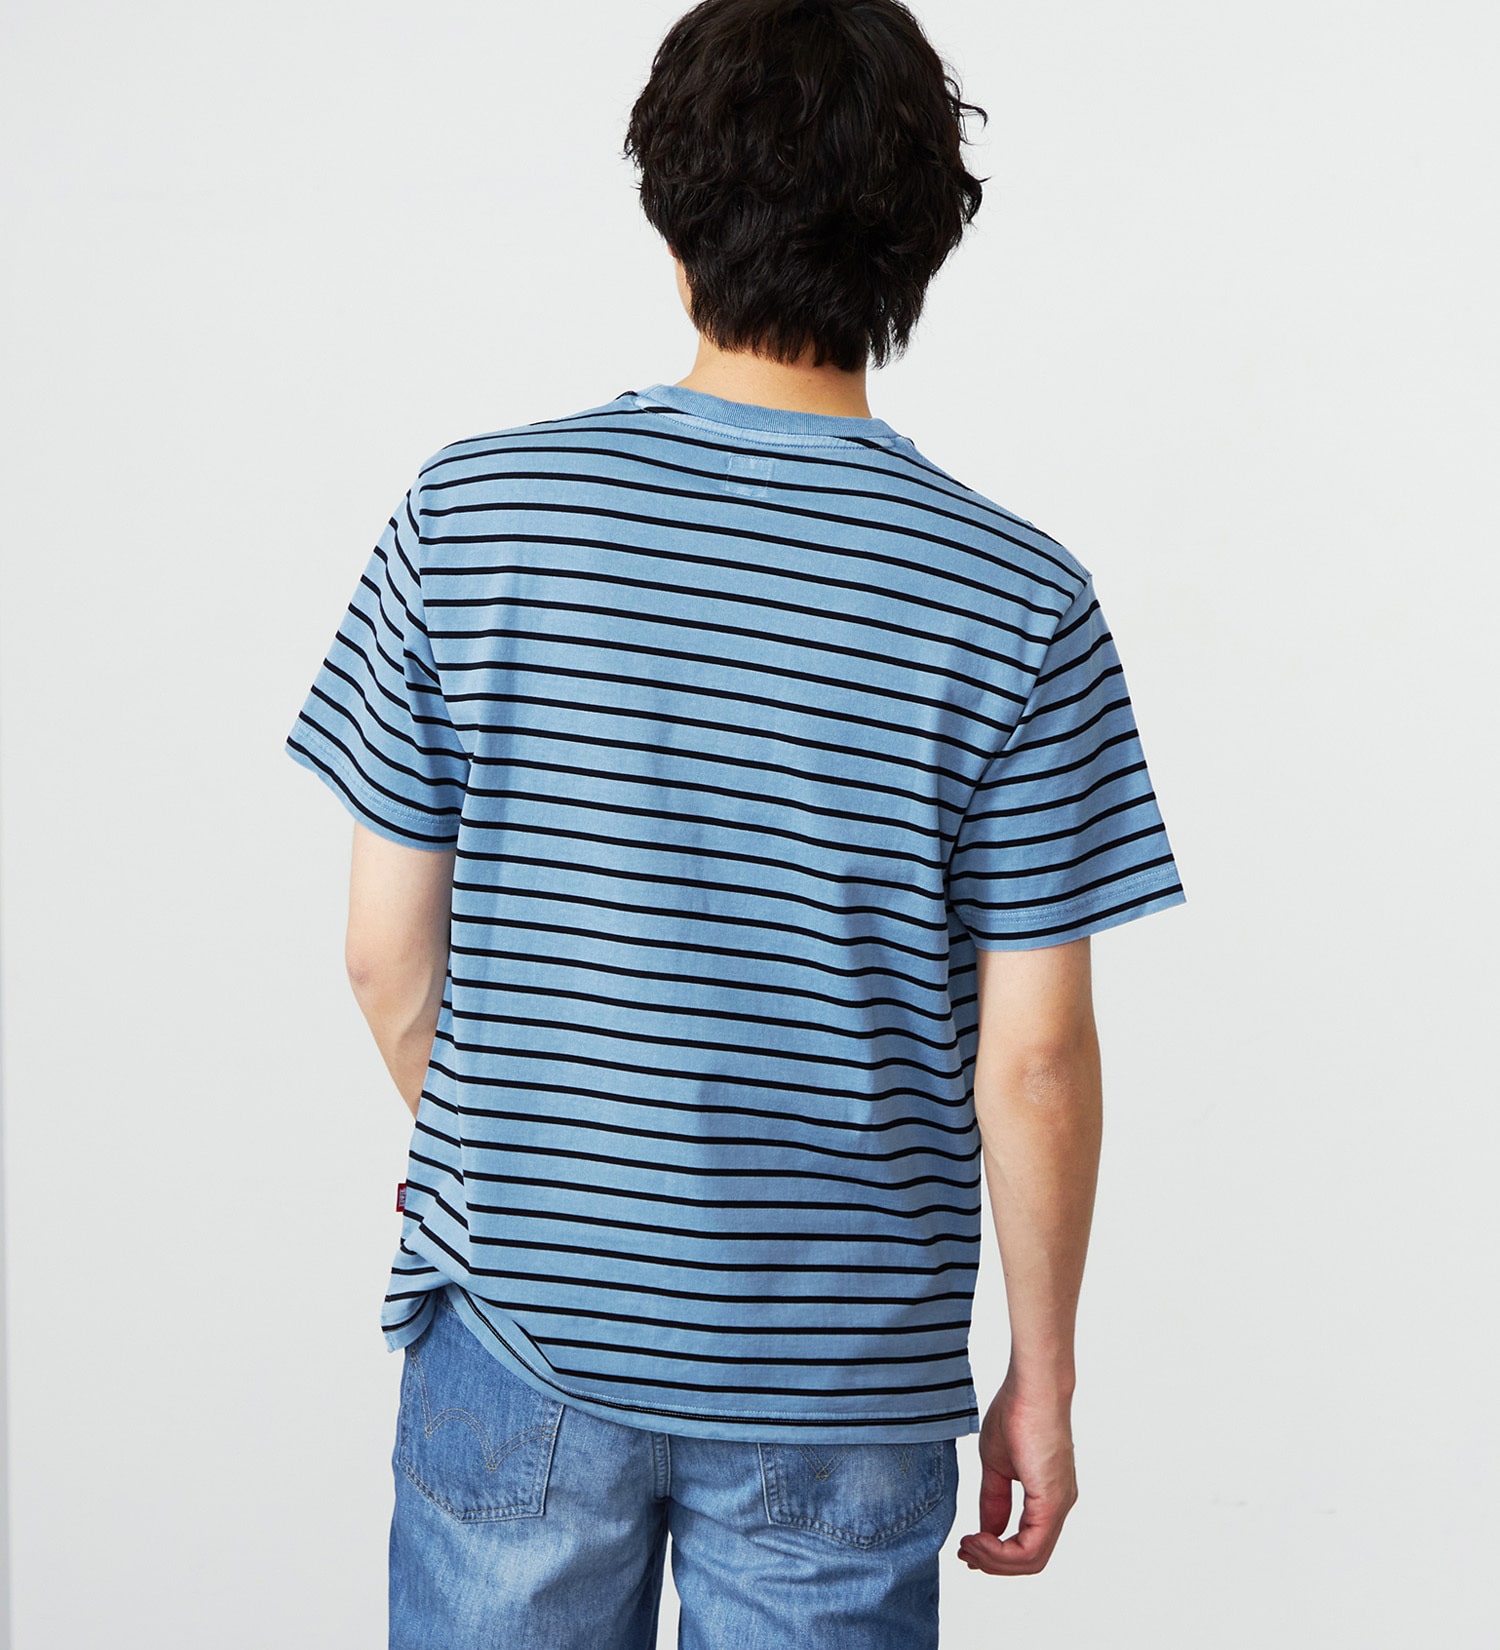 EDWIN(エドウイン)のピグメント加工ボーダーTシャツ|トップス/Tシャツ/カットソー/メンズ|ブルー